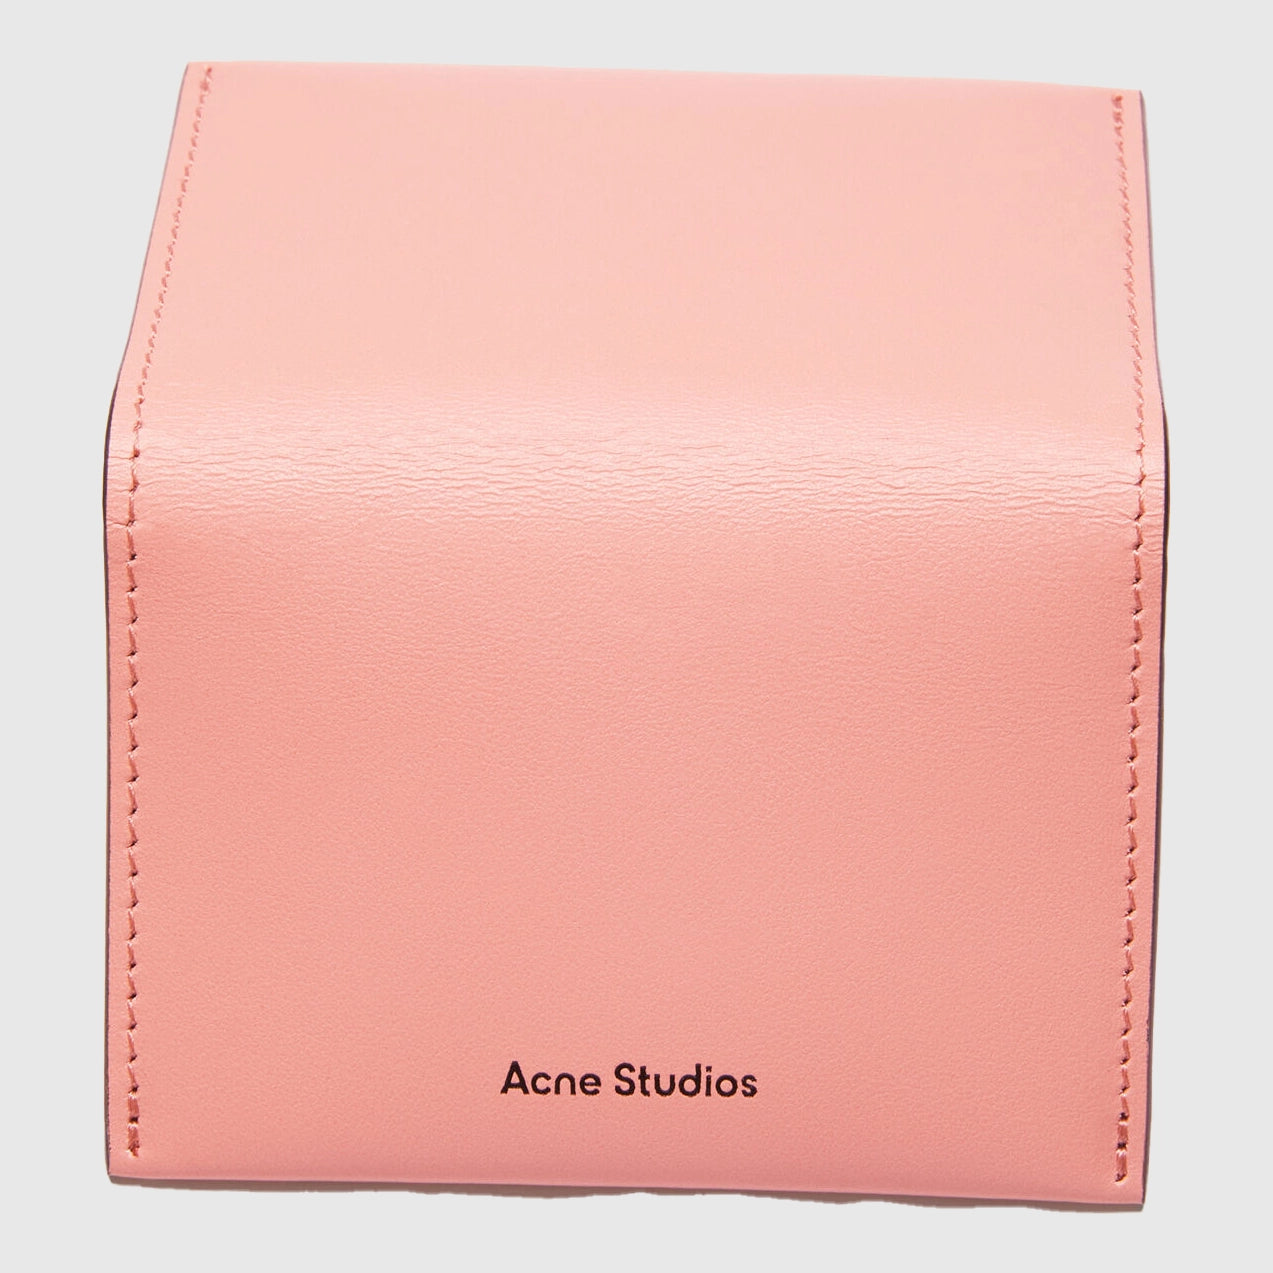 Acne Studios Folded Cardholder - Salmon Pink Cardholder Acne Studios 